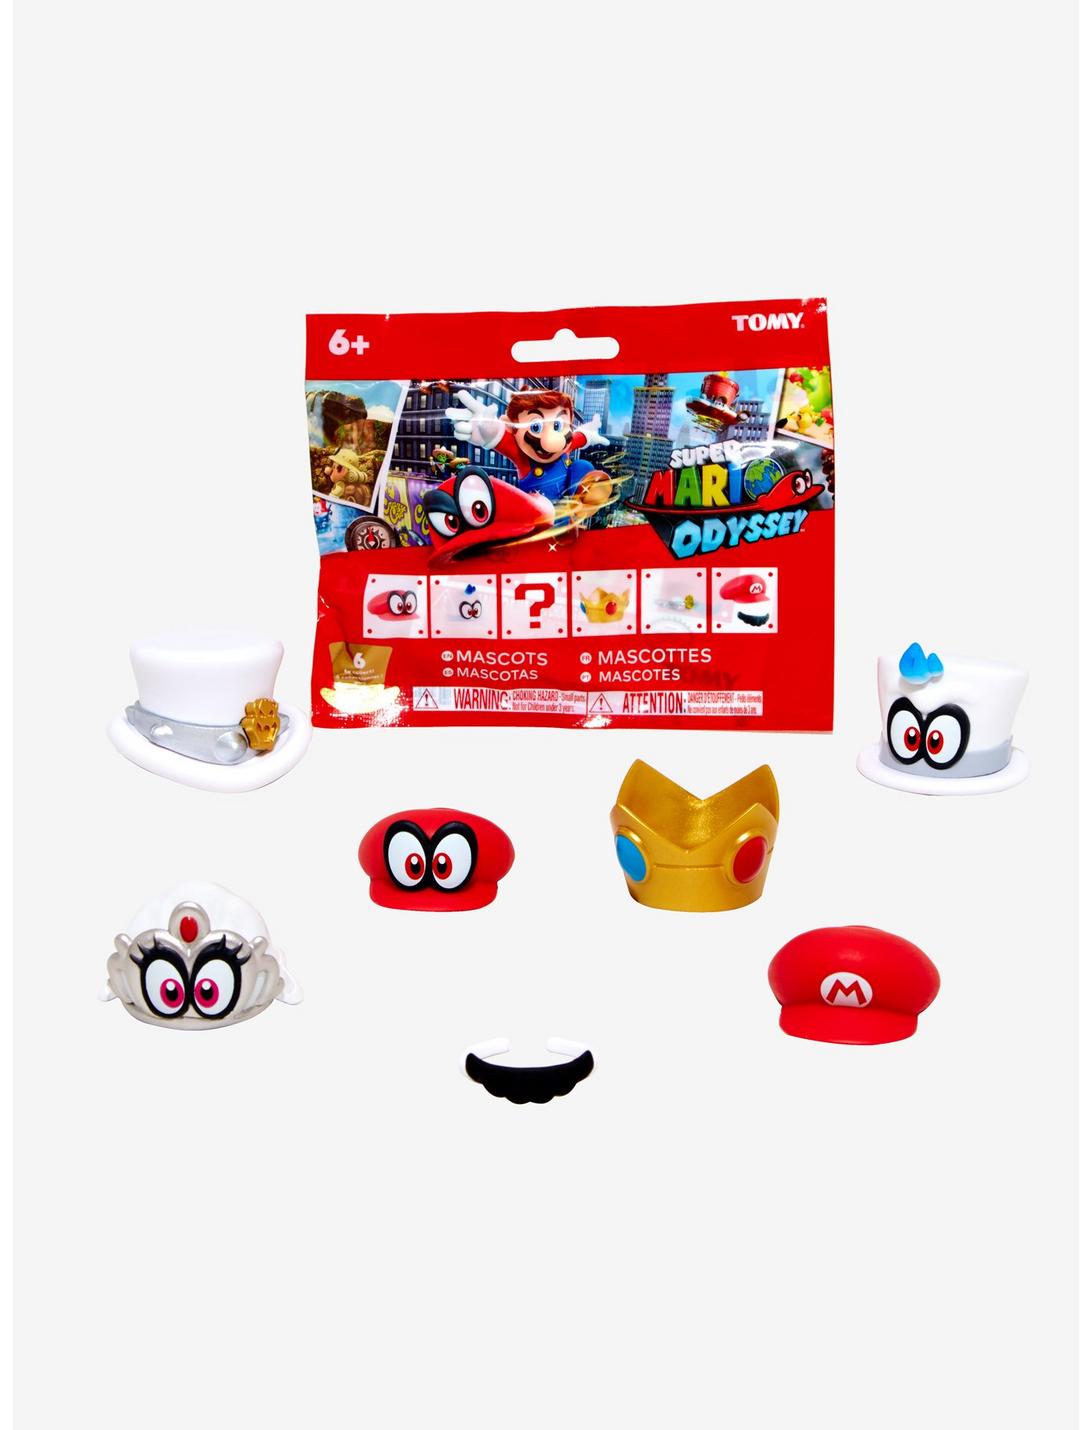 Super Mario Odyssey Cappy & Friends Figures Blind Bag, , hi-res